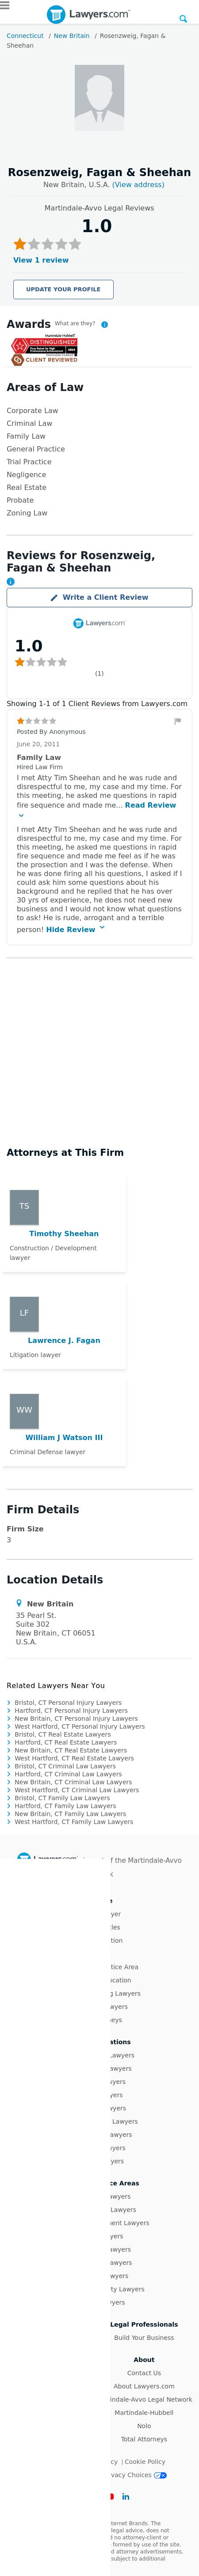 Sheehanwatson & Maluszewski - Hartford CT Lawyers